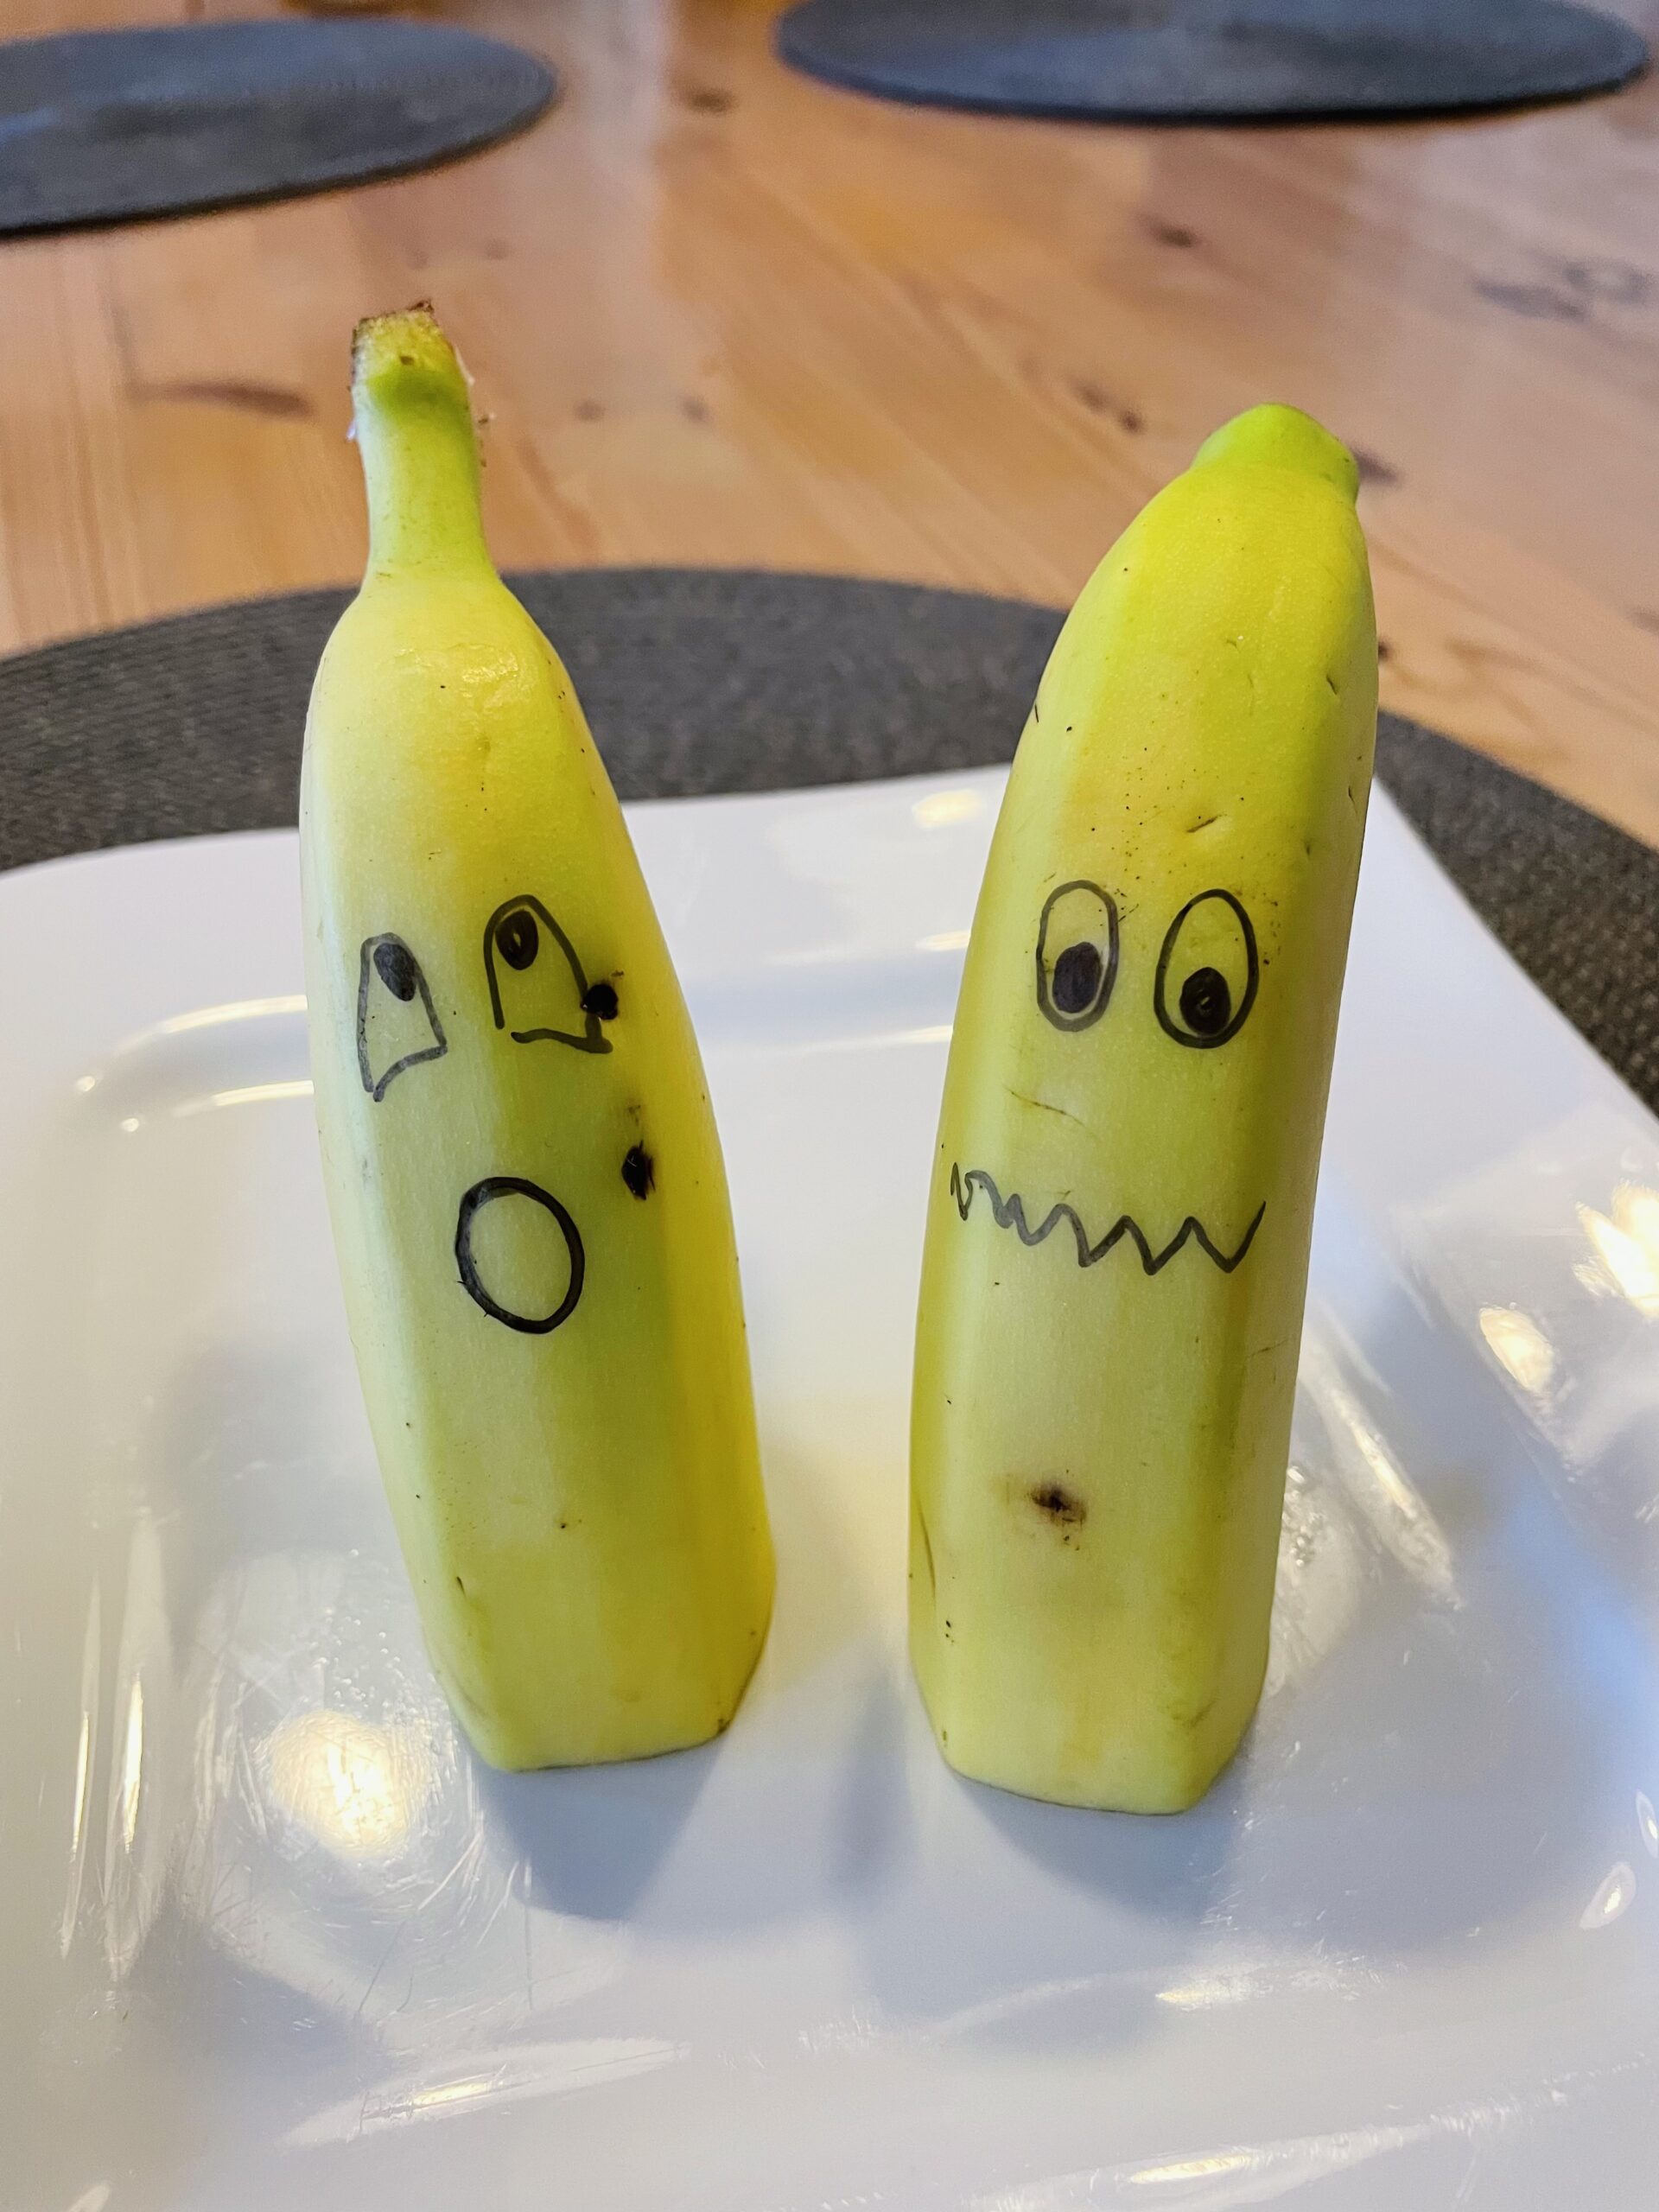 Bild zum Schritt 19 für das Bastel- und DIY-Abenteuer für Kinder: 'Fertig sind die Bananen-Gespenster bzw. die Bananen-Geister.'